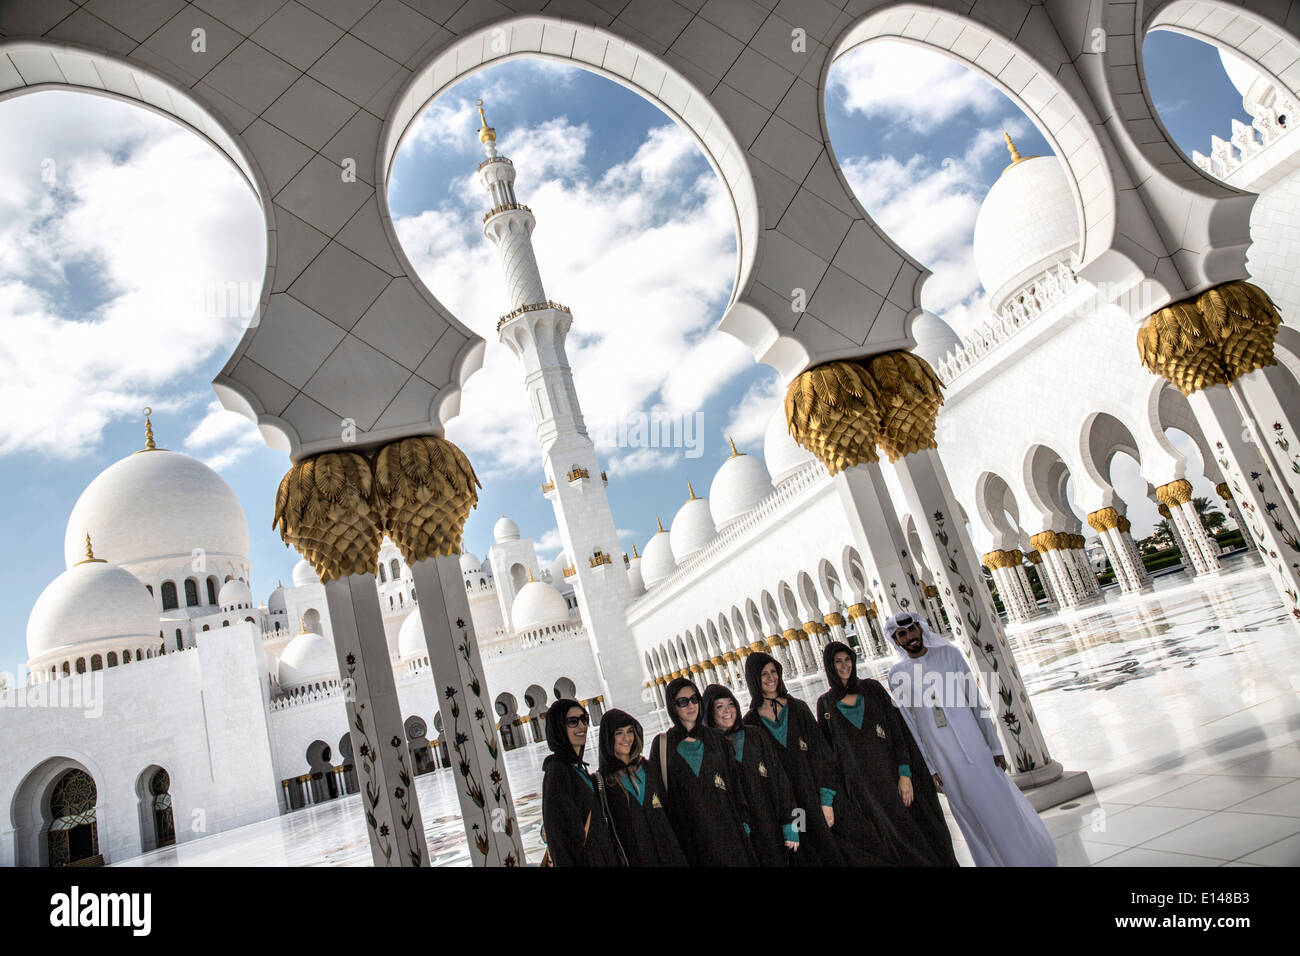 Emirats arabes unis, Abu Dhabi, Grande Mosquée de Sheikh Zayed. Groupe de touristes, habillé de se conformer au code vestimentaire, photo Banque D'Images